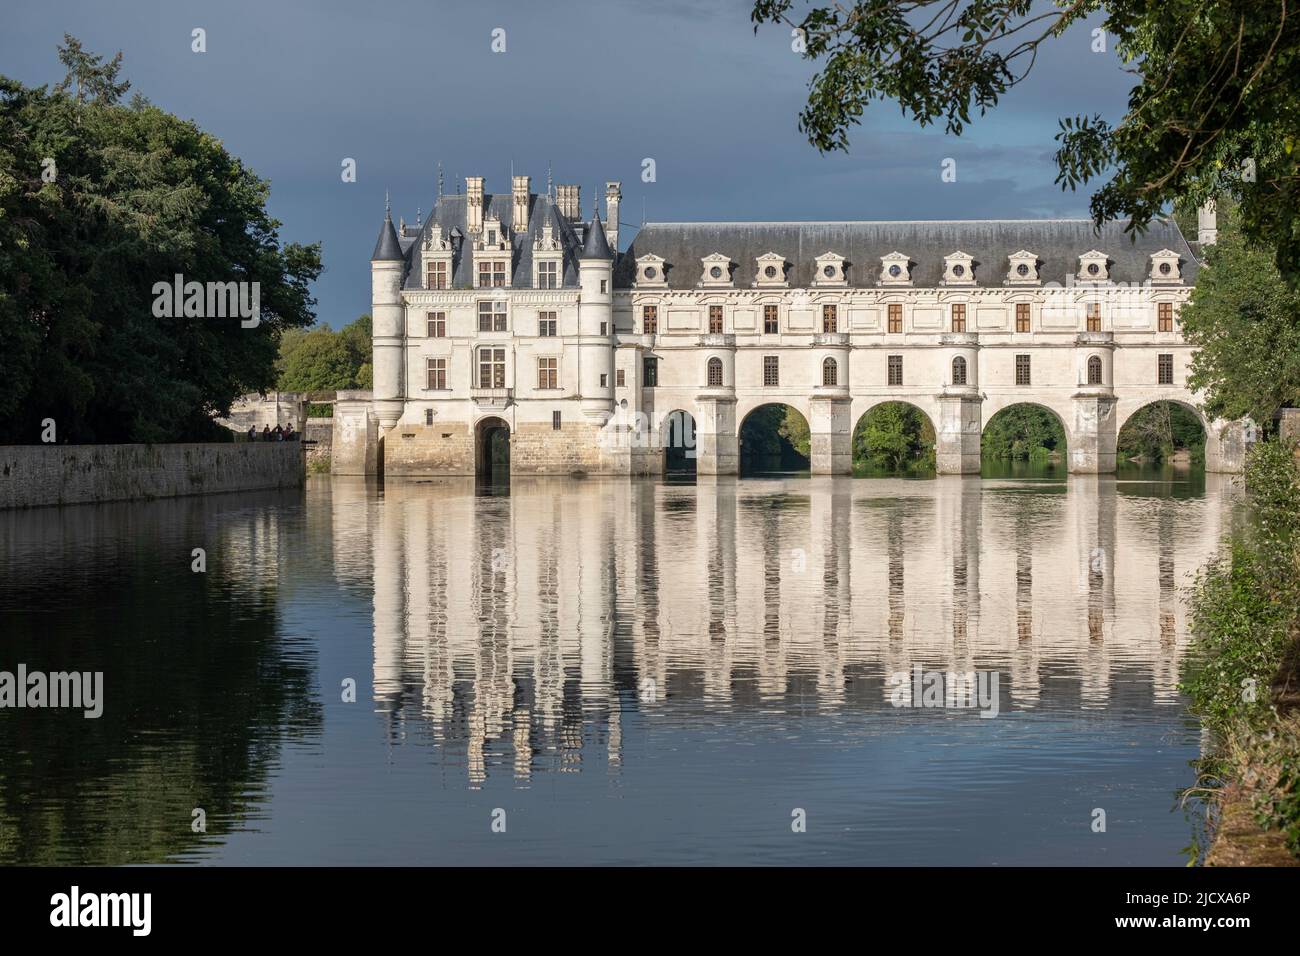 Castello di Chenonceau riflesso nell'acqua, patrimonio dell'umanità dell'UNESCO, Chenonceau, Indre-et-Loire, Centro-Val de Loire, Francia, Europa Foto Stock